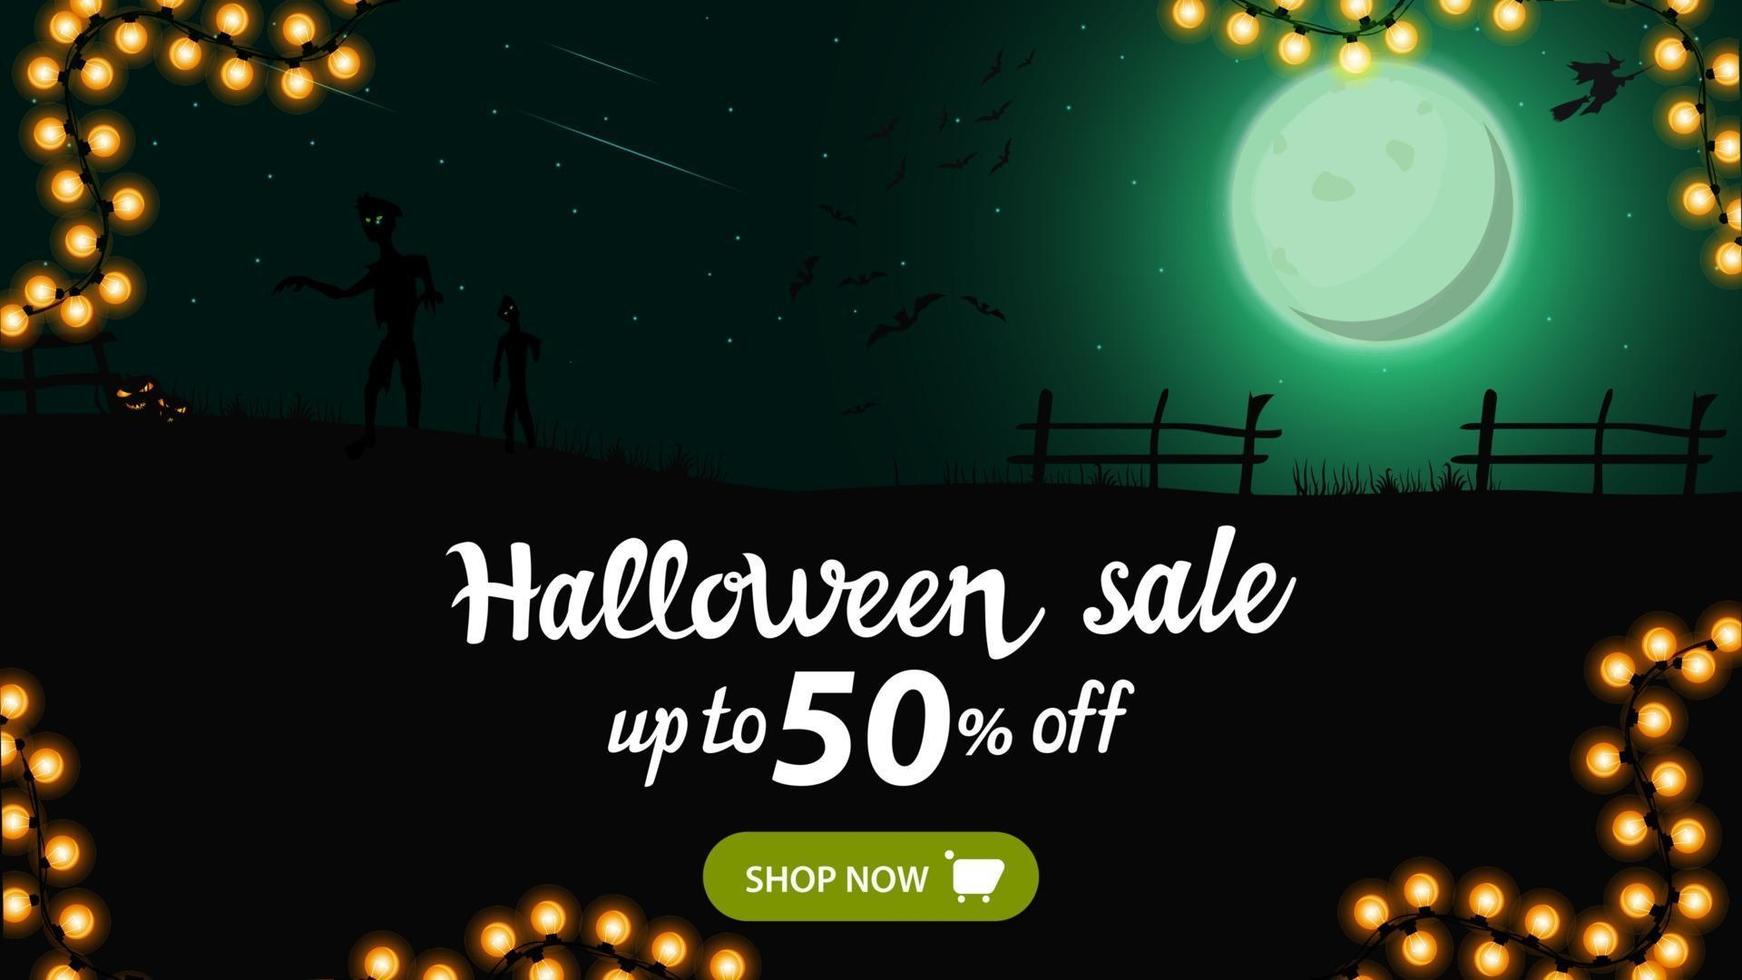 halloween-uitverkoop, tot 50 korting, horizontale kortingsbanner voor uw bedrijf met groen nachtlandschap met groene volle maan, zombie, heksen en pompoenen. vector